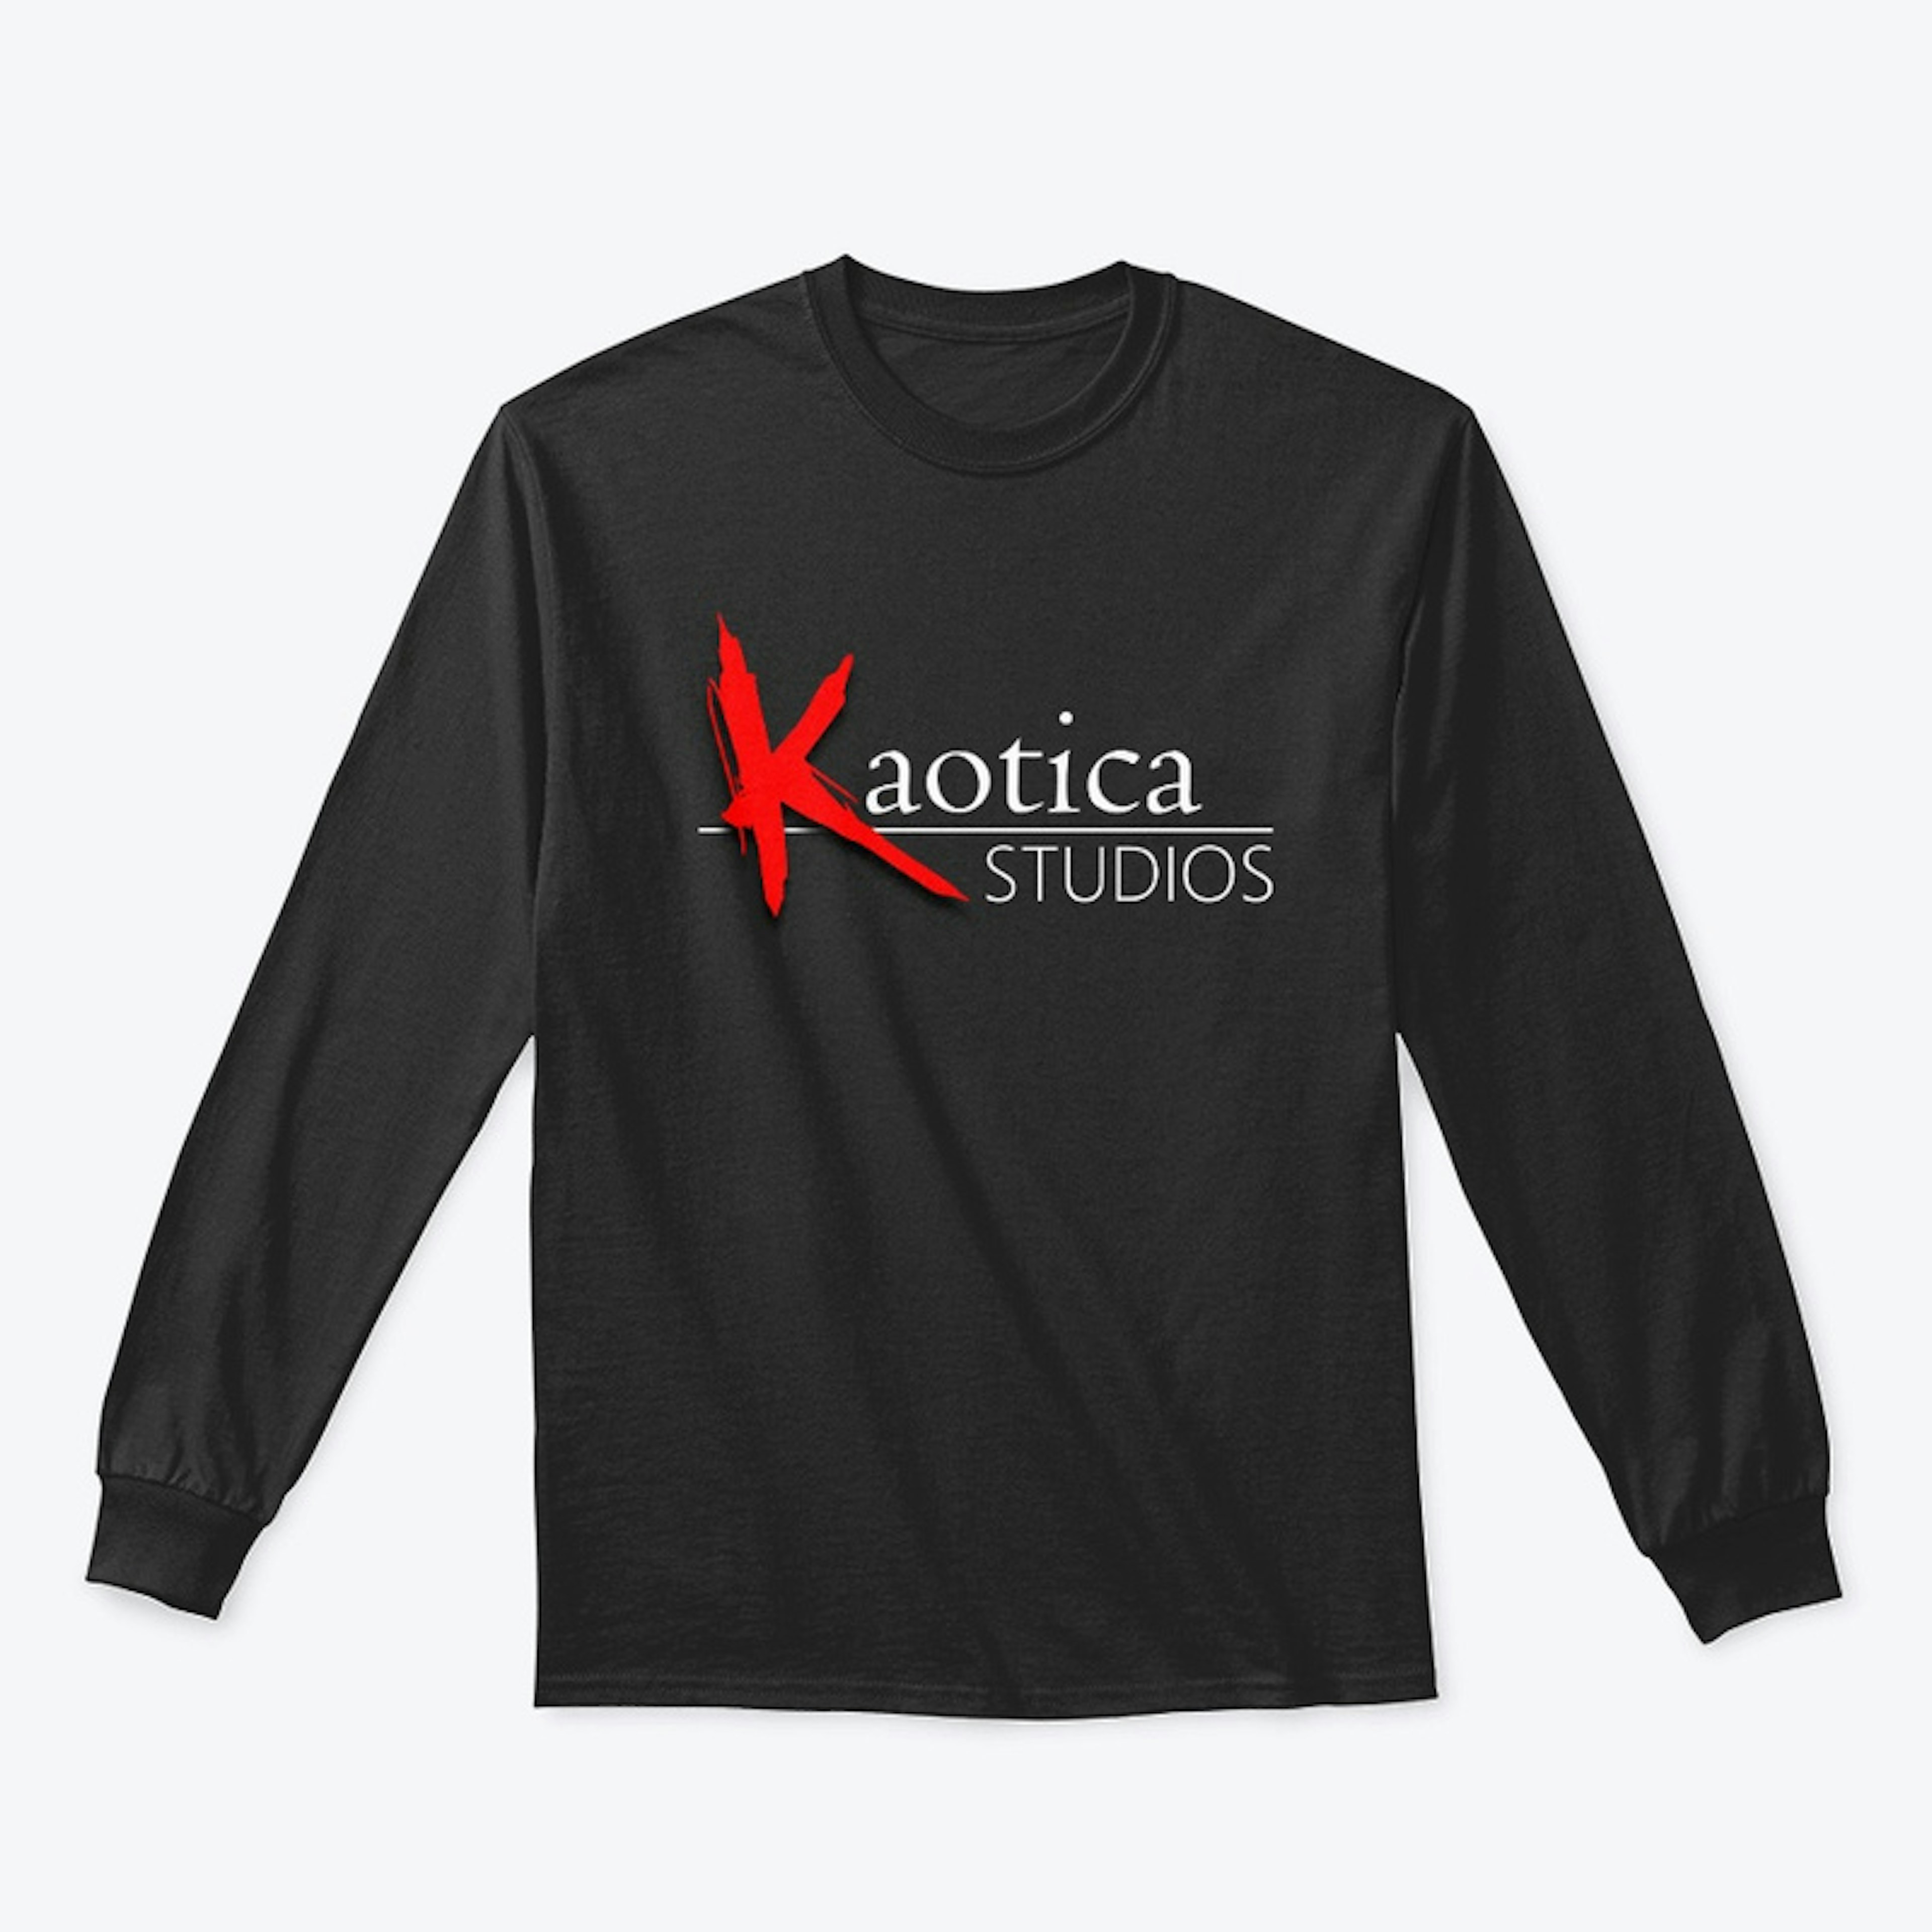 Kaotica Studios